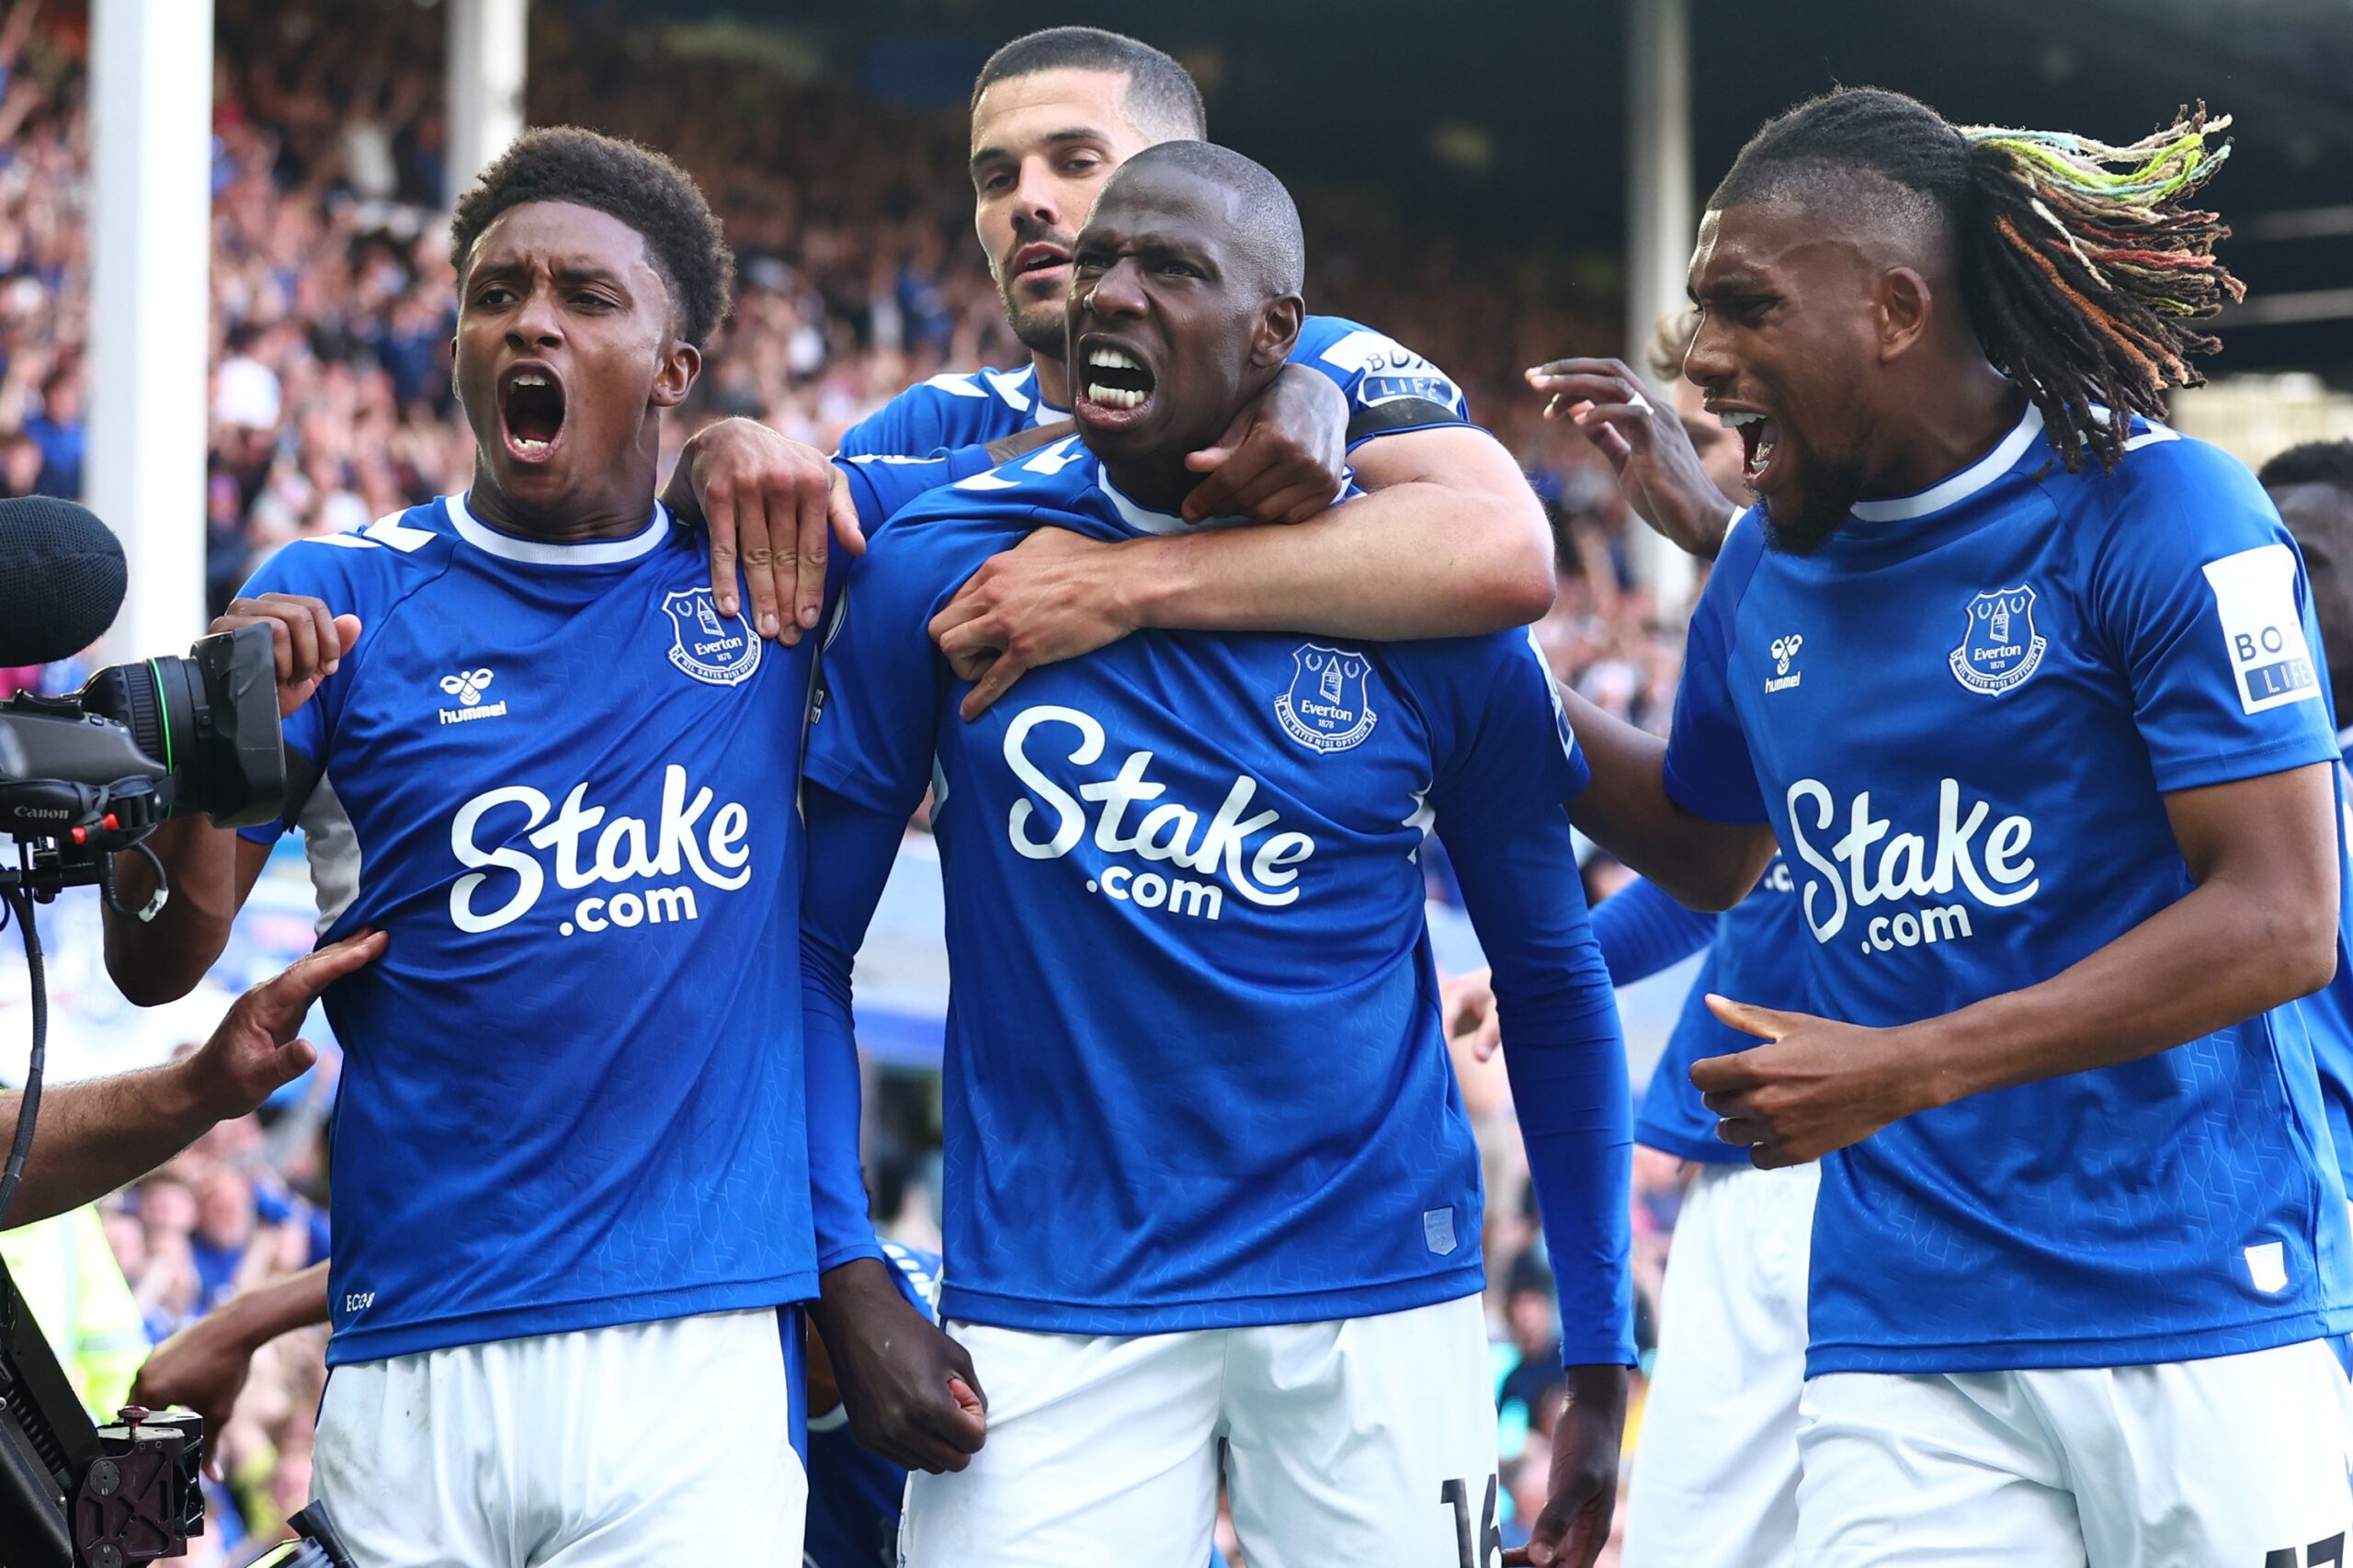 Truyền thông Anh: Nếu Everton kháng cáo thành công, việc trừ điểm có thể giảm từ 10 điểm xuống 3~6 điểm